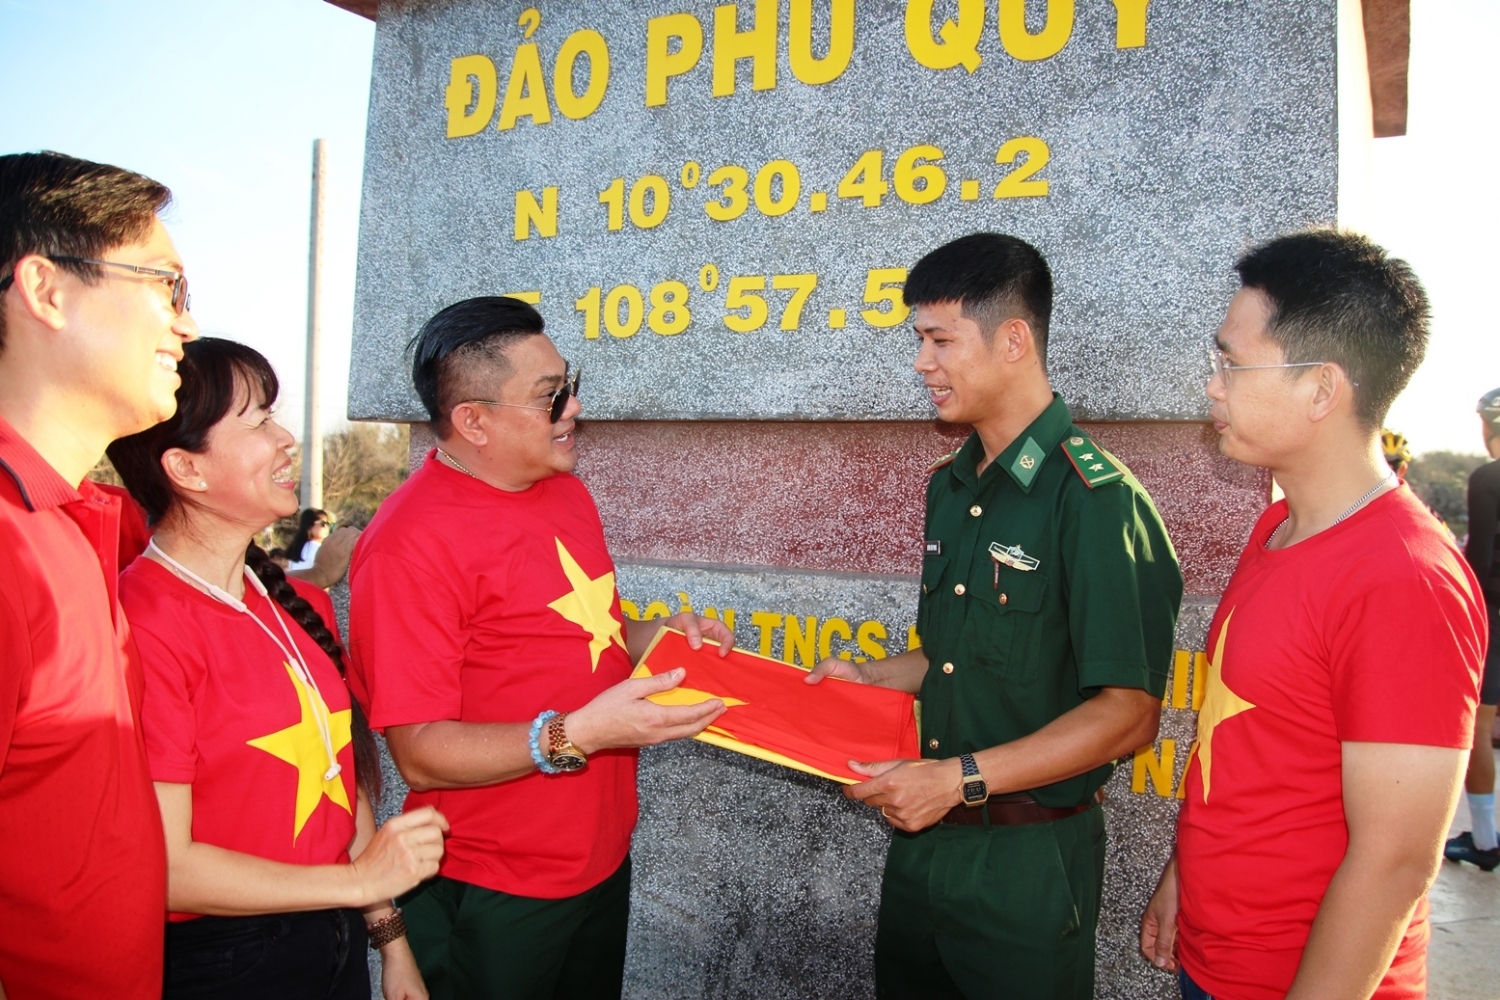 Đồng chí Đặng Đình Công - Chủ tịch Hội động viên Bộ đội Biên phòng đảo Phú Quý bảo vệ vững chắc chủ quyền an ninh biên giới, hoàn thành tốt nhiệm vụ chính trị được giao.